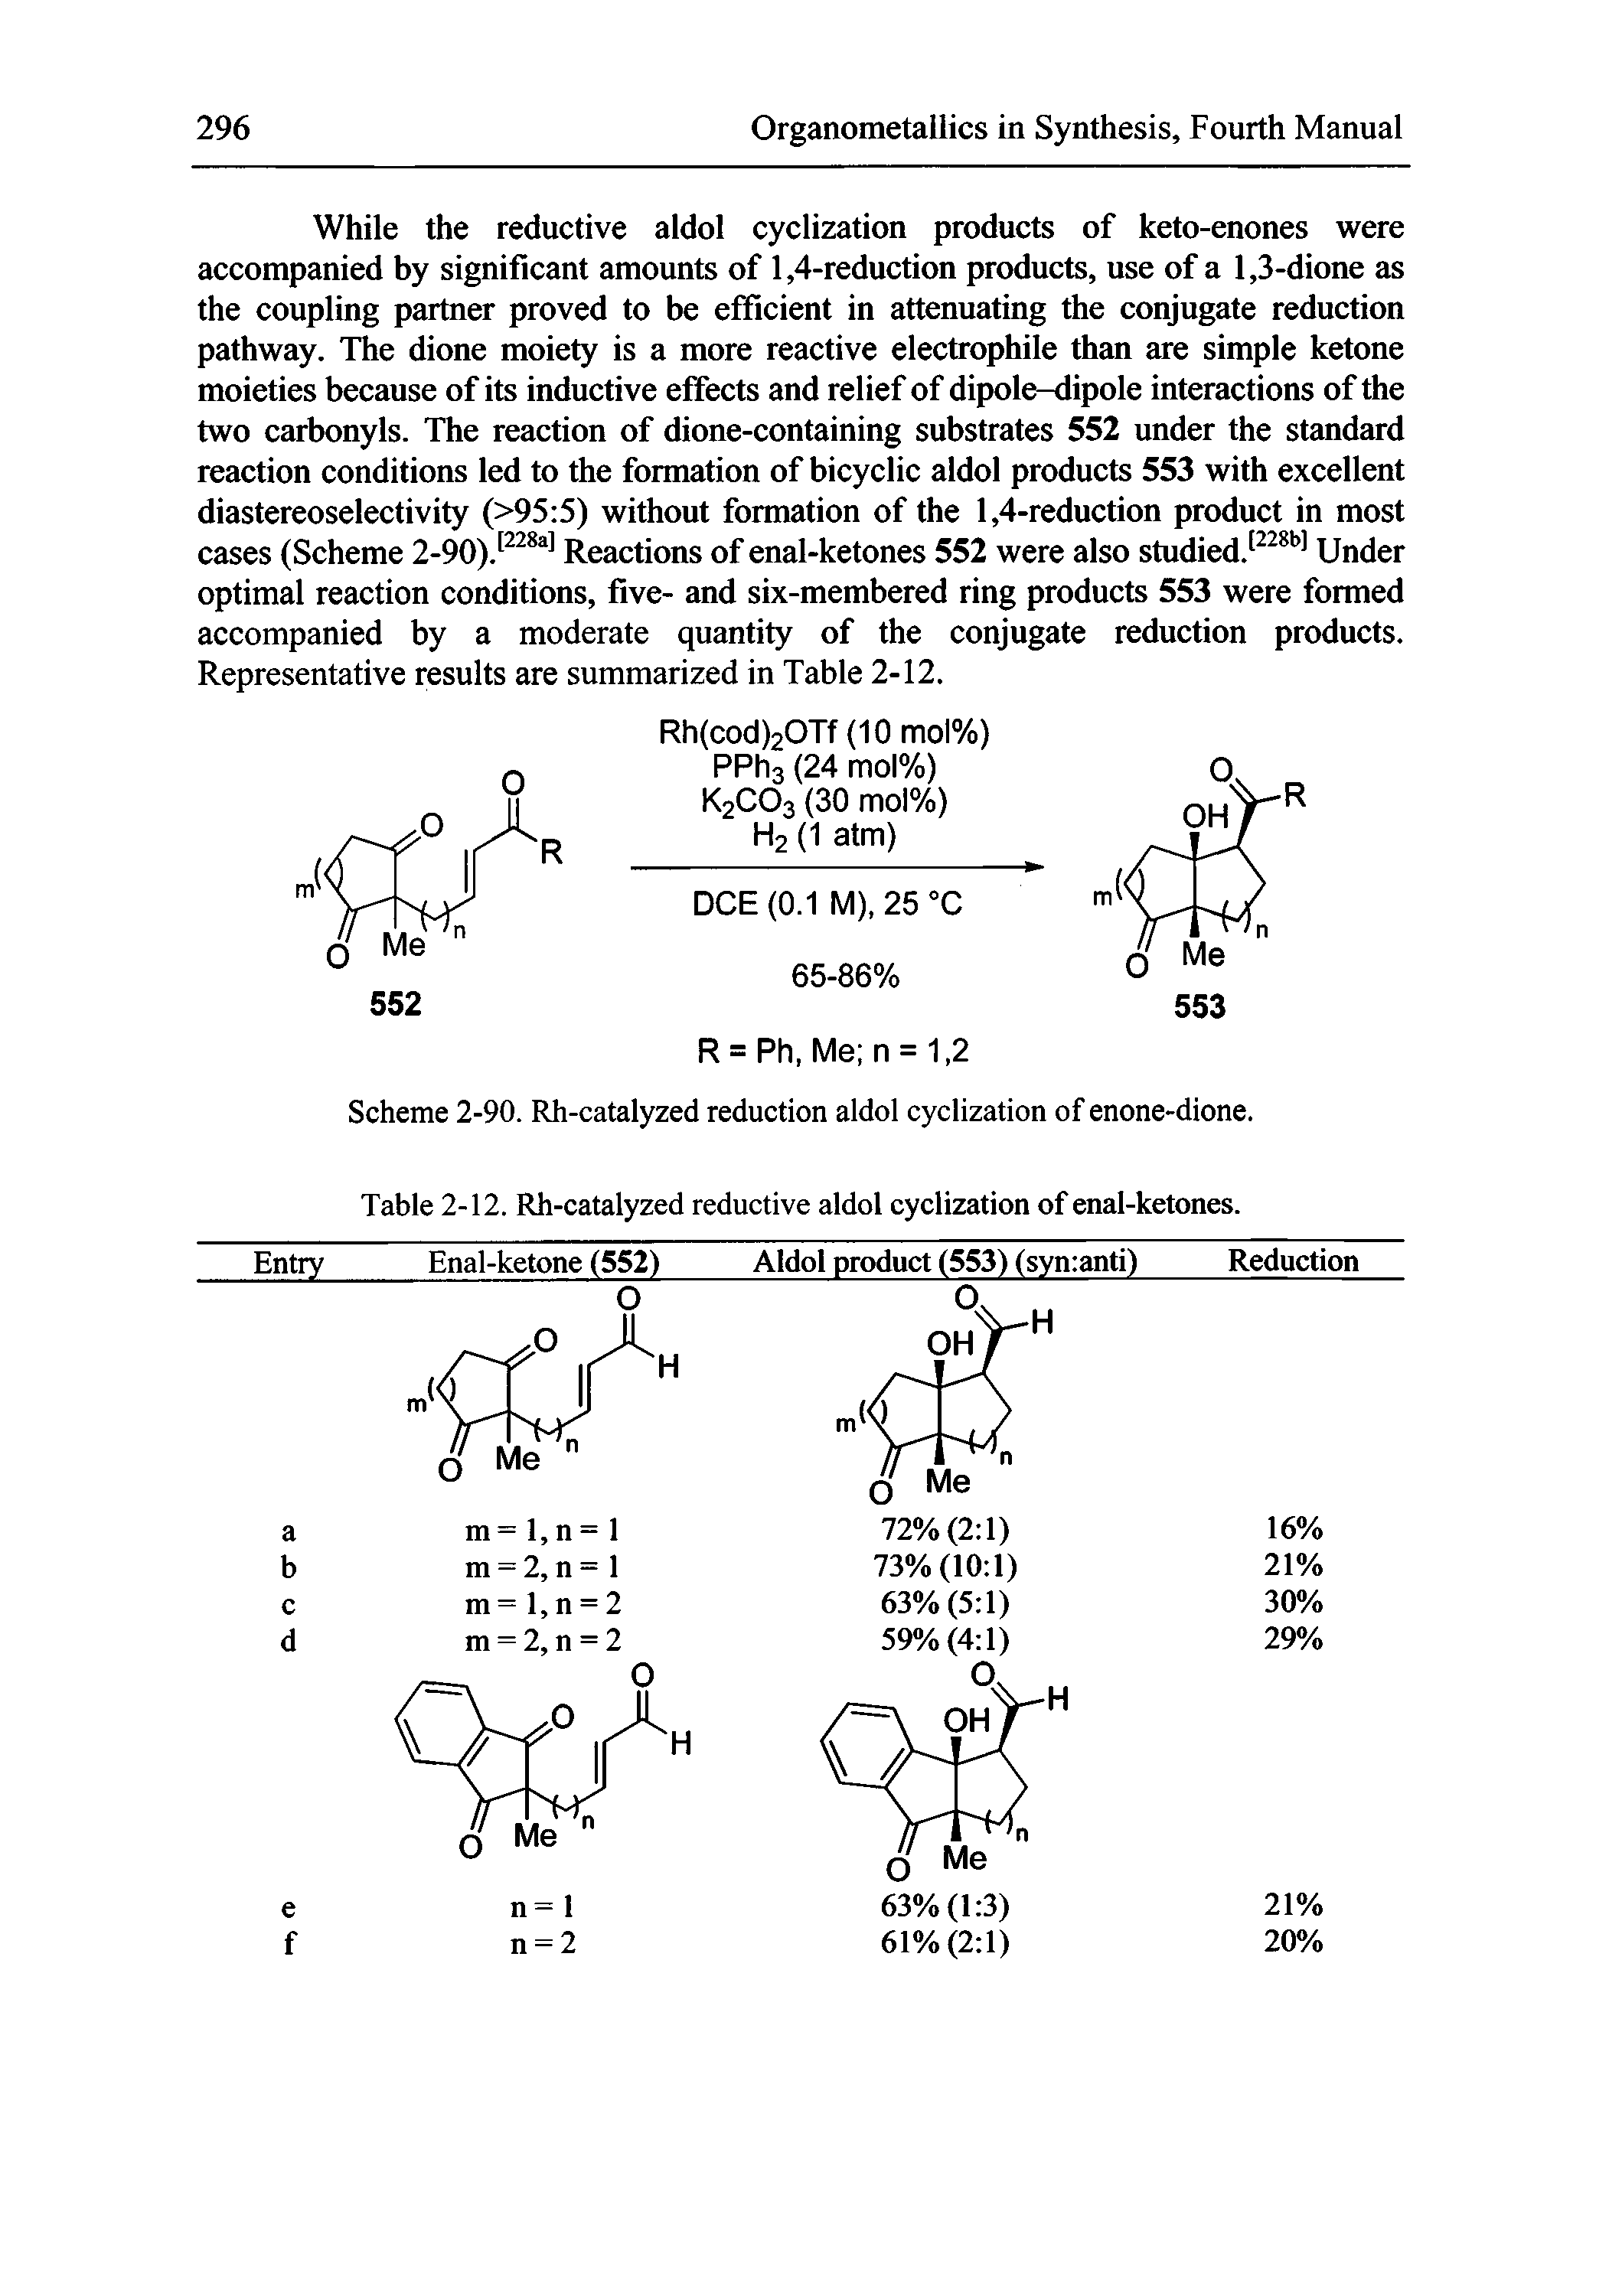 Scheme 2-90. Rh-catalyzed reduction aldol cyclization of enone-dione.